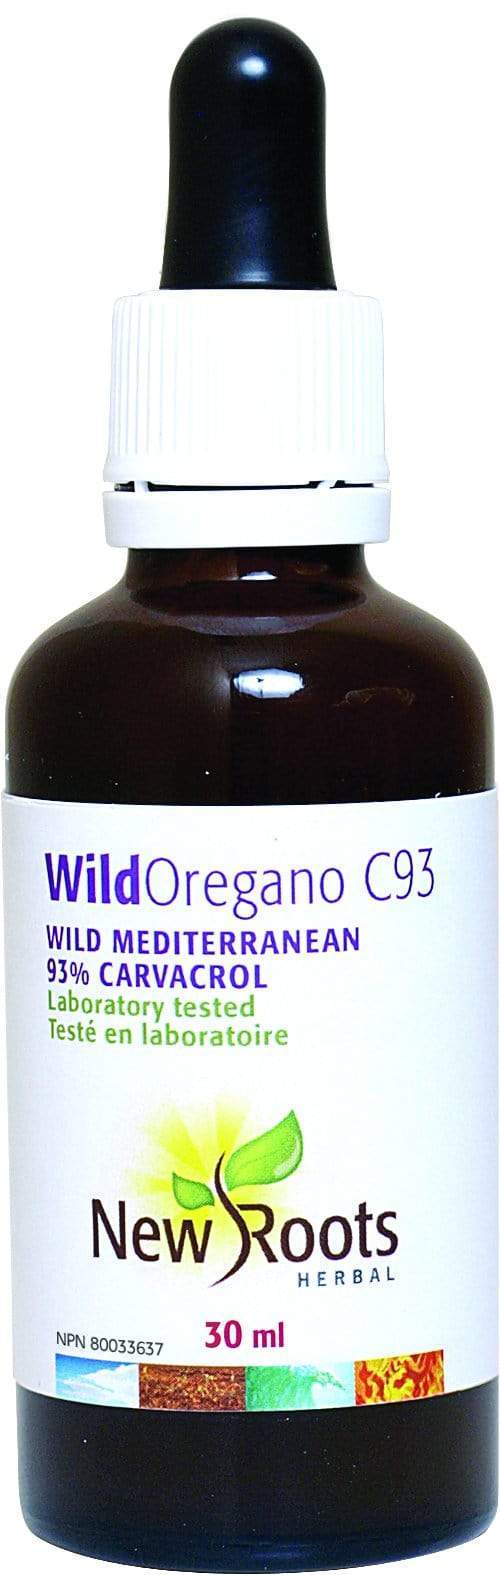 New Roots Wild Oregano C93 30 ml